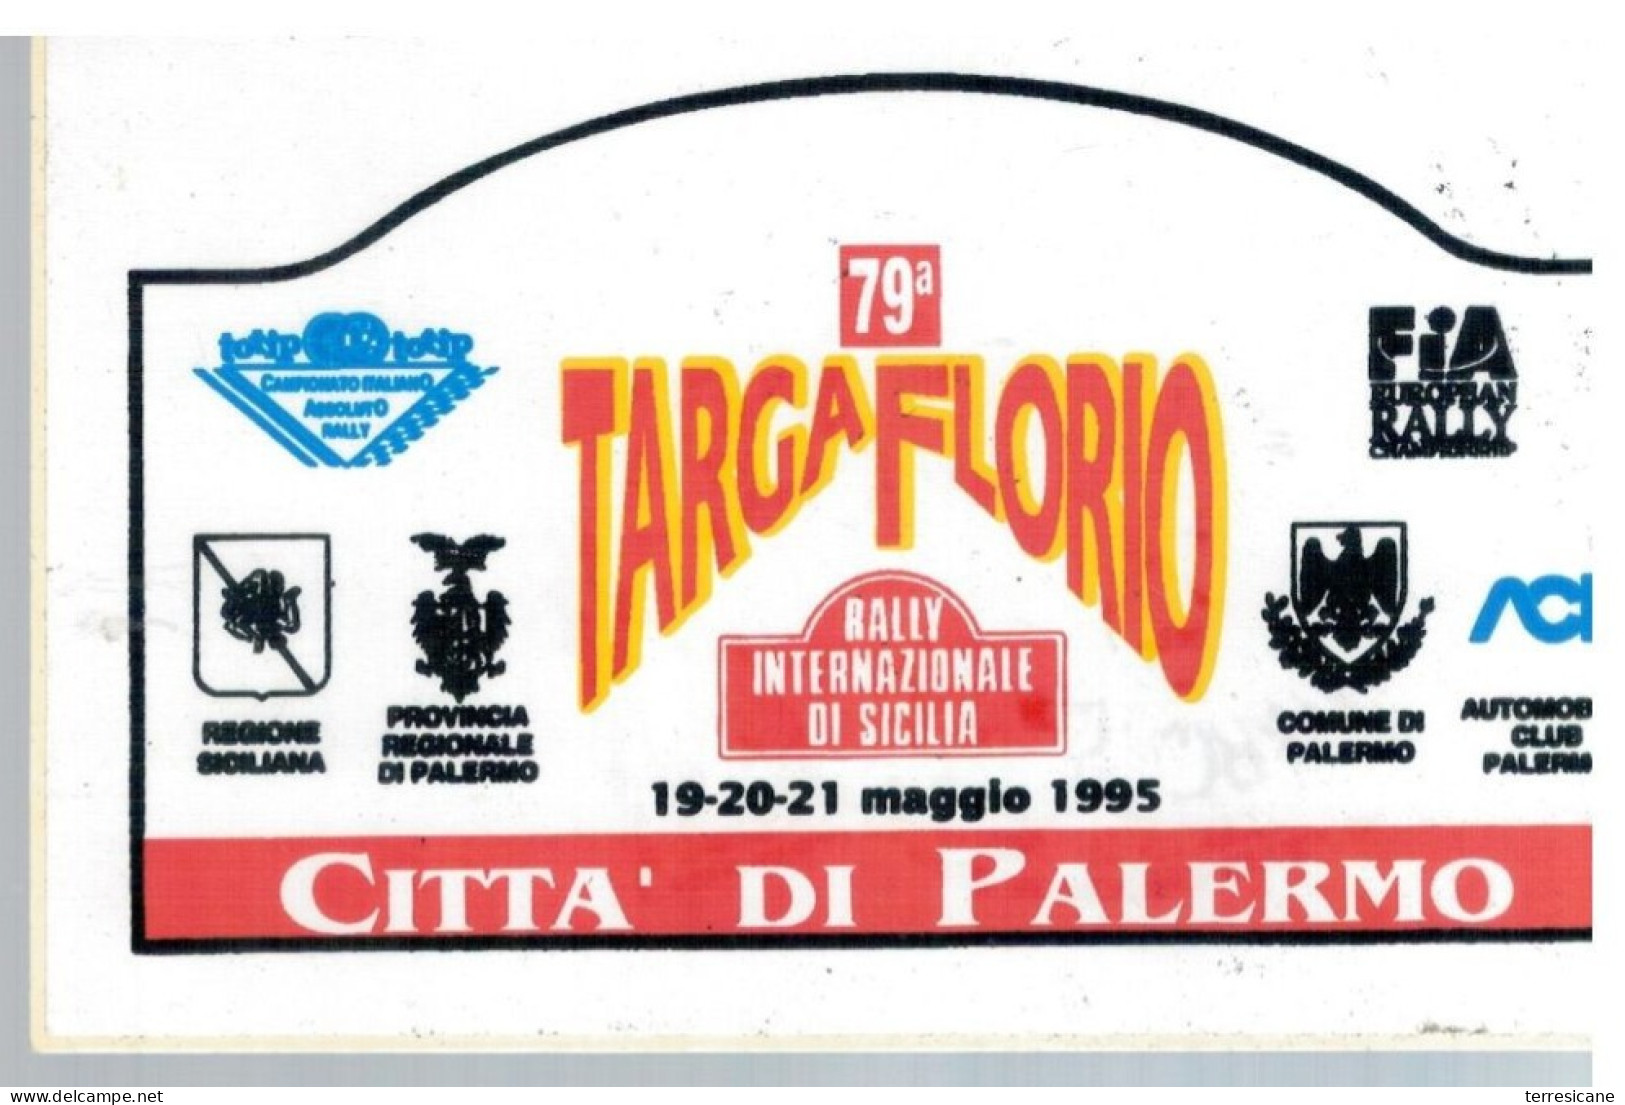 79 TARGA FLORIO 95 RALLY INTERNAZIONALE Placca Adesiva - Automobile - F1